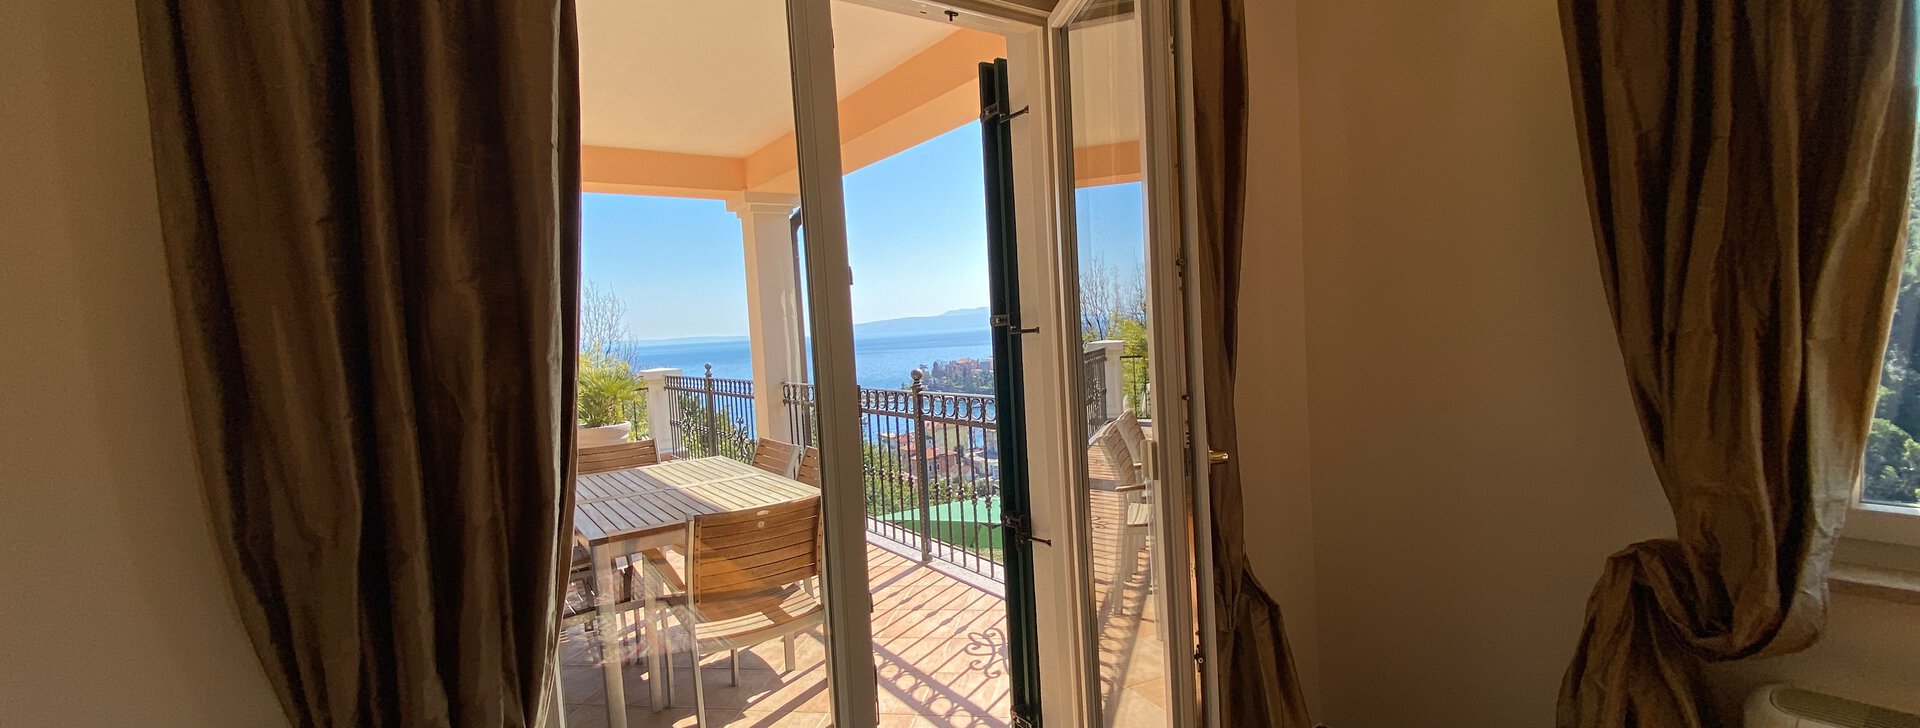 Zugang zur Terrasse, Traumhafte und großzügige Wohnung mit Blick aufs Meer in Kroatien, Immobilie kaufen, Ičići-Kroatien | © HausBauHaus GmbH